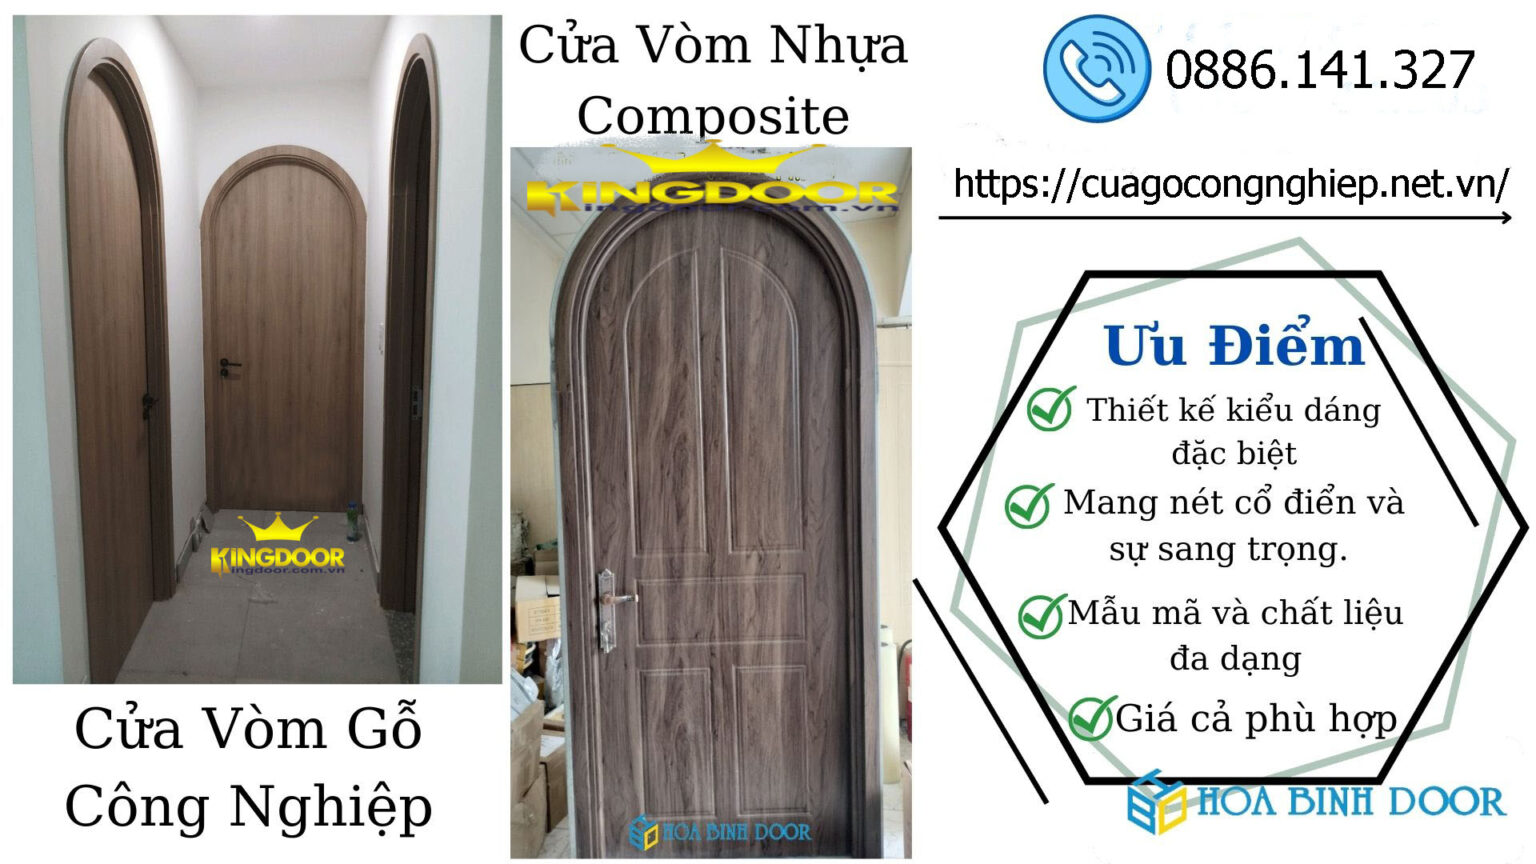 Cửa vòm nhựa composite tại Phú Yên - Cửa nhà vệ sinh